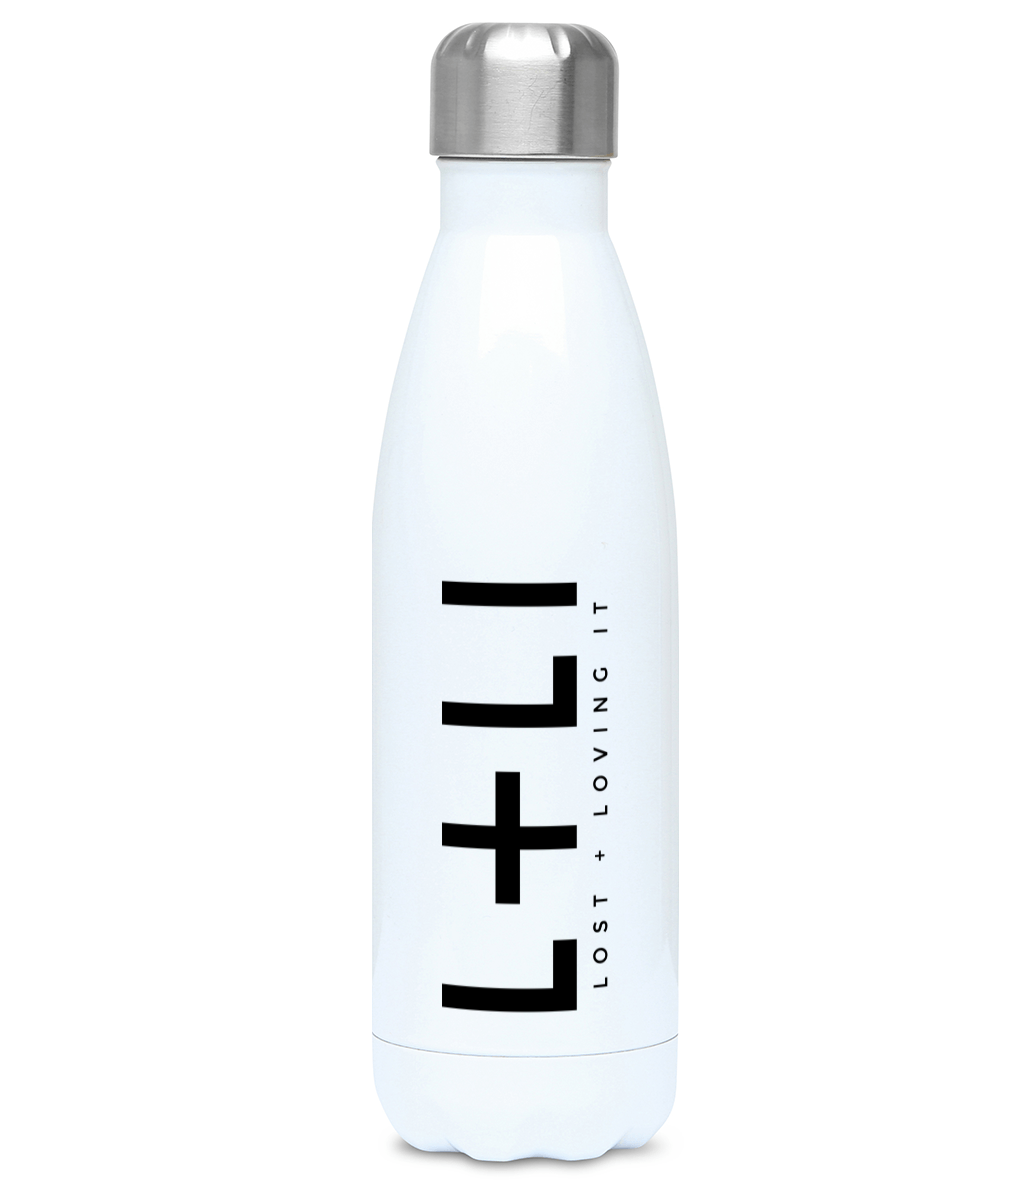 500ml Water Bottle white, with L+LI logo